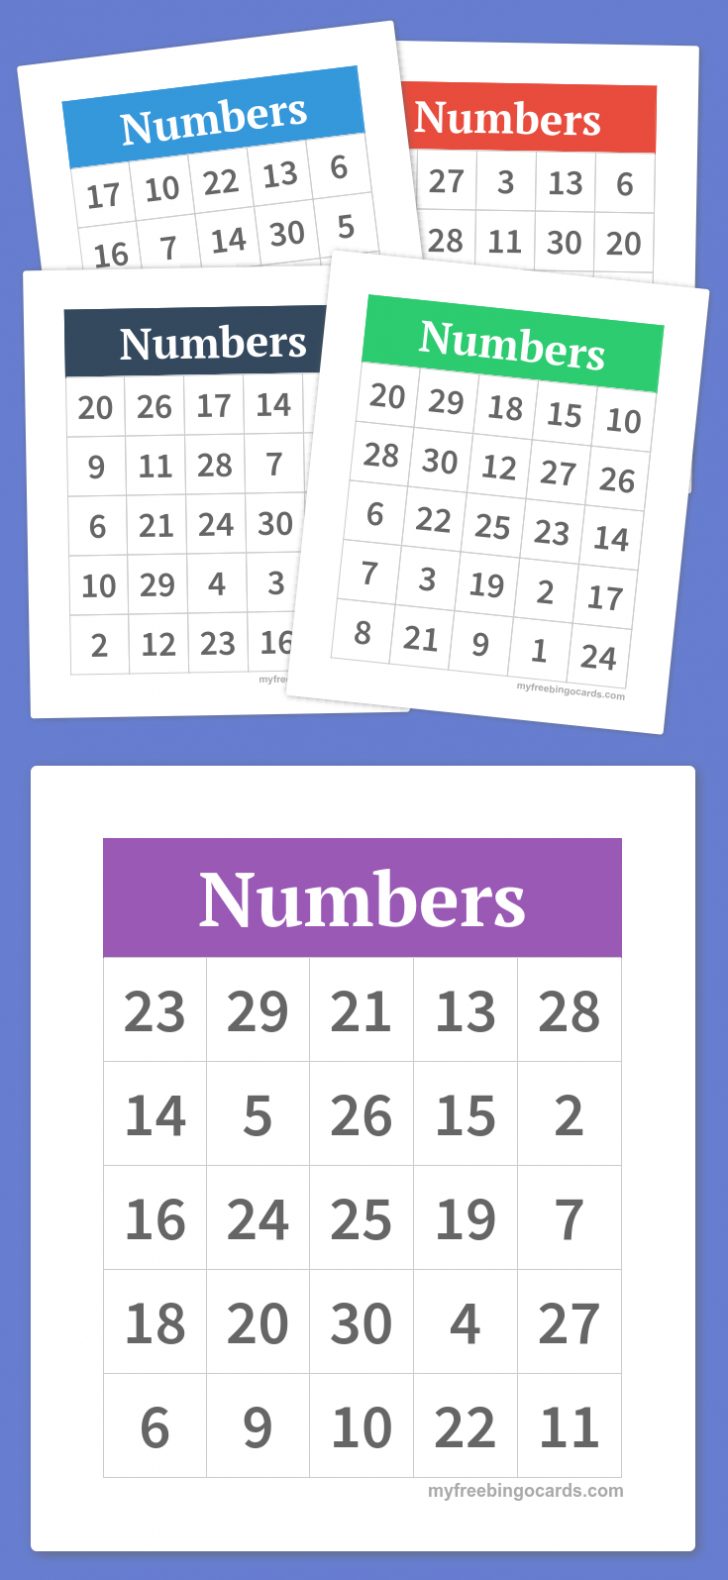 Printable Bingo Cards Numbers 1 75